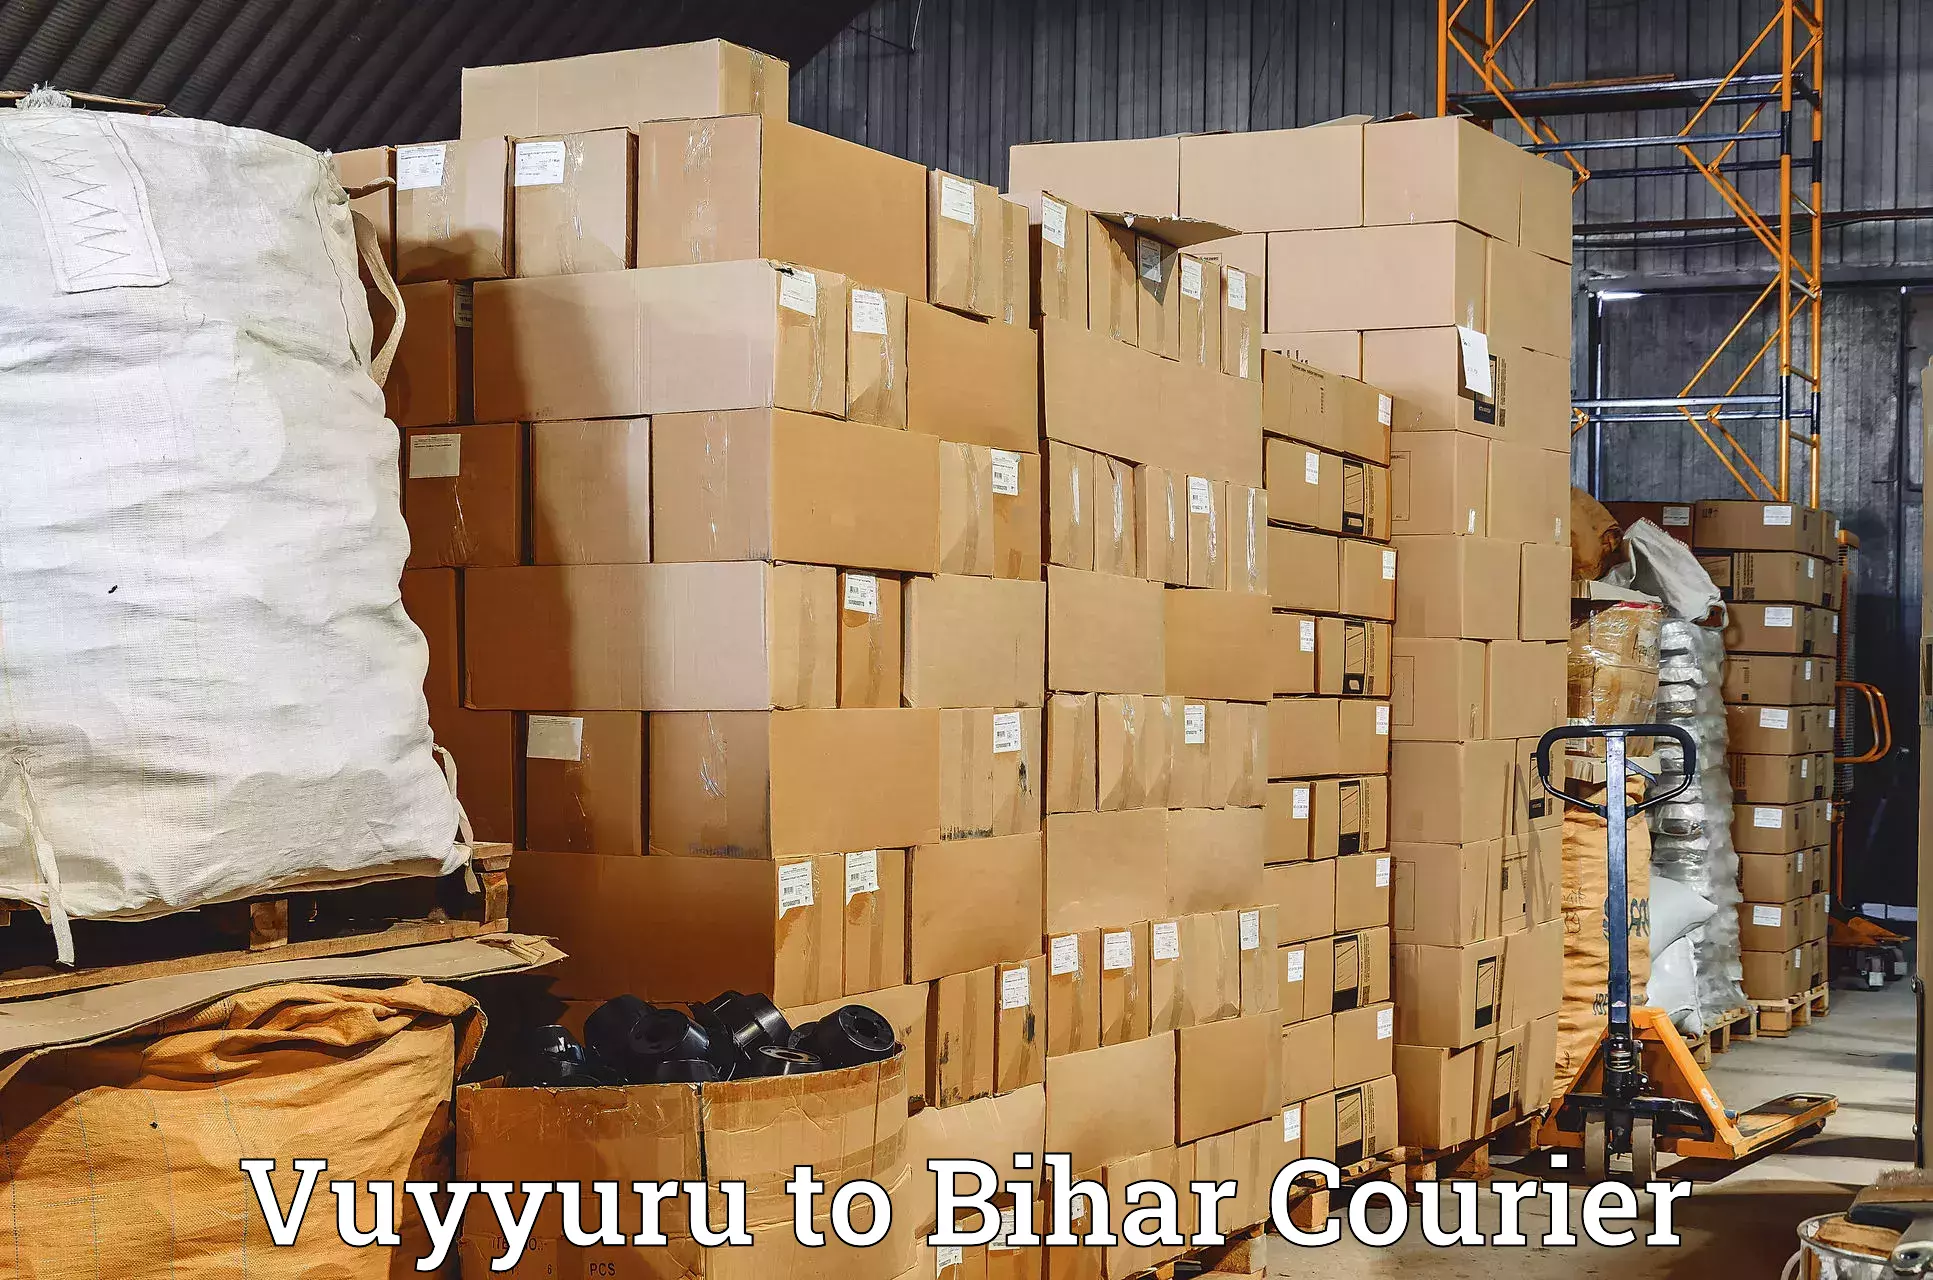 24/7 shipping services Vuyyuru to Sheikhpura